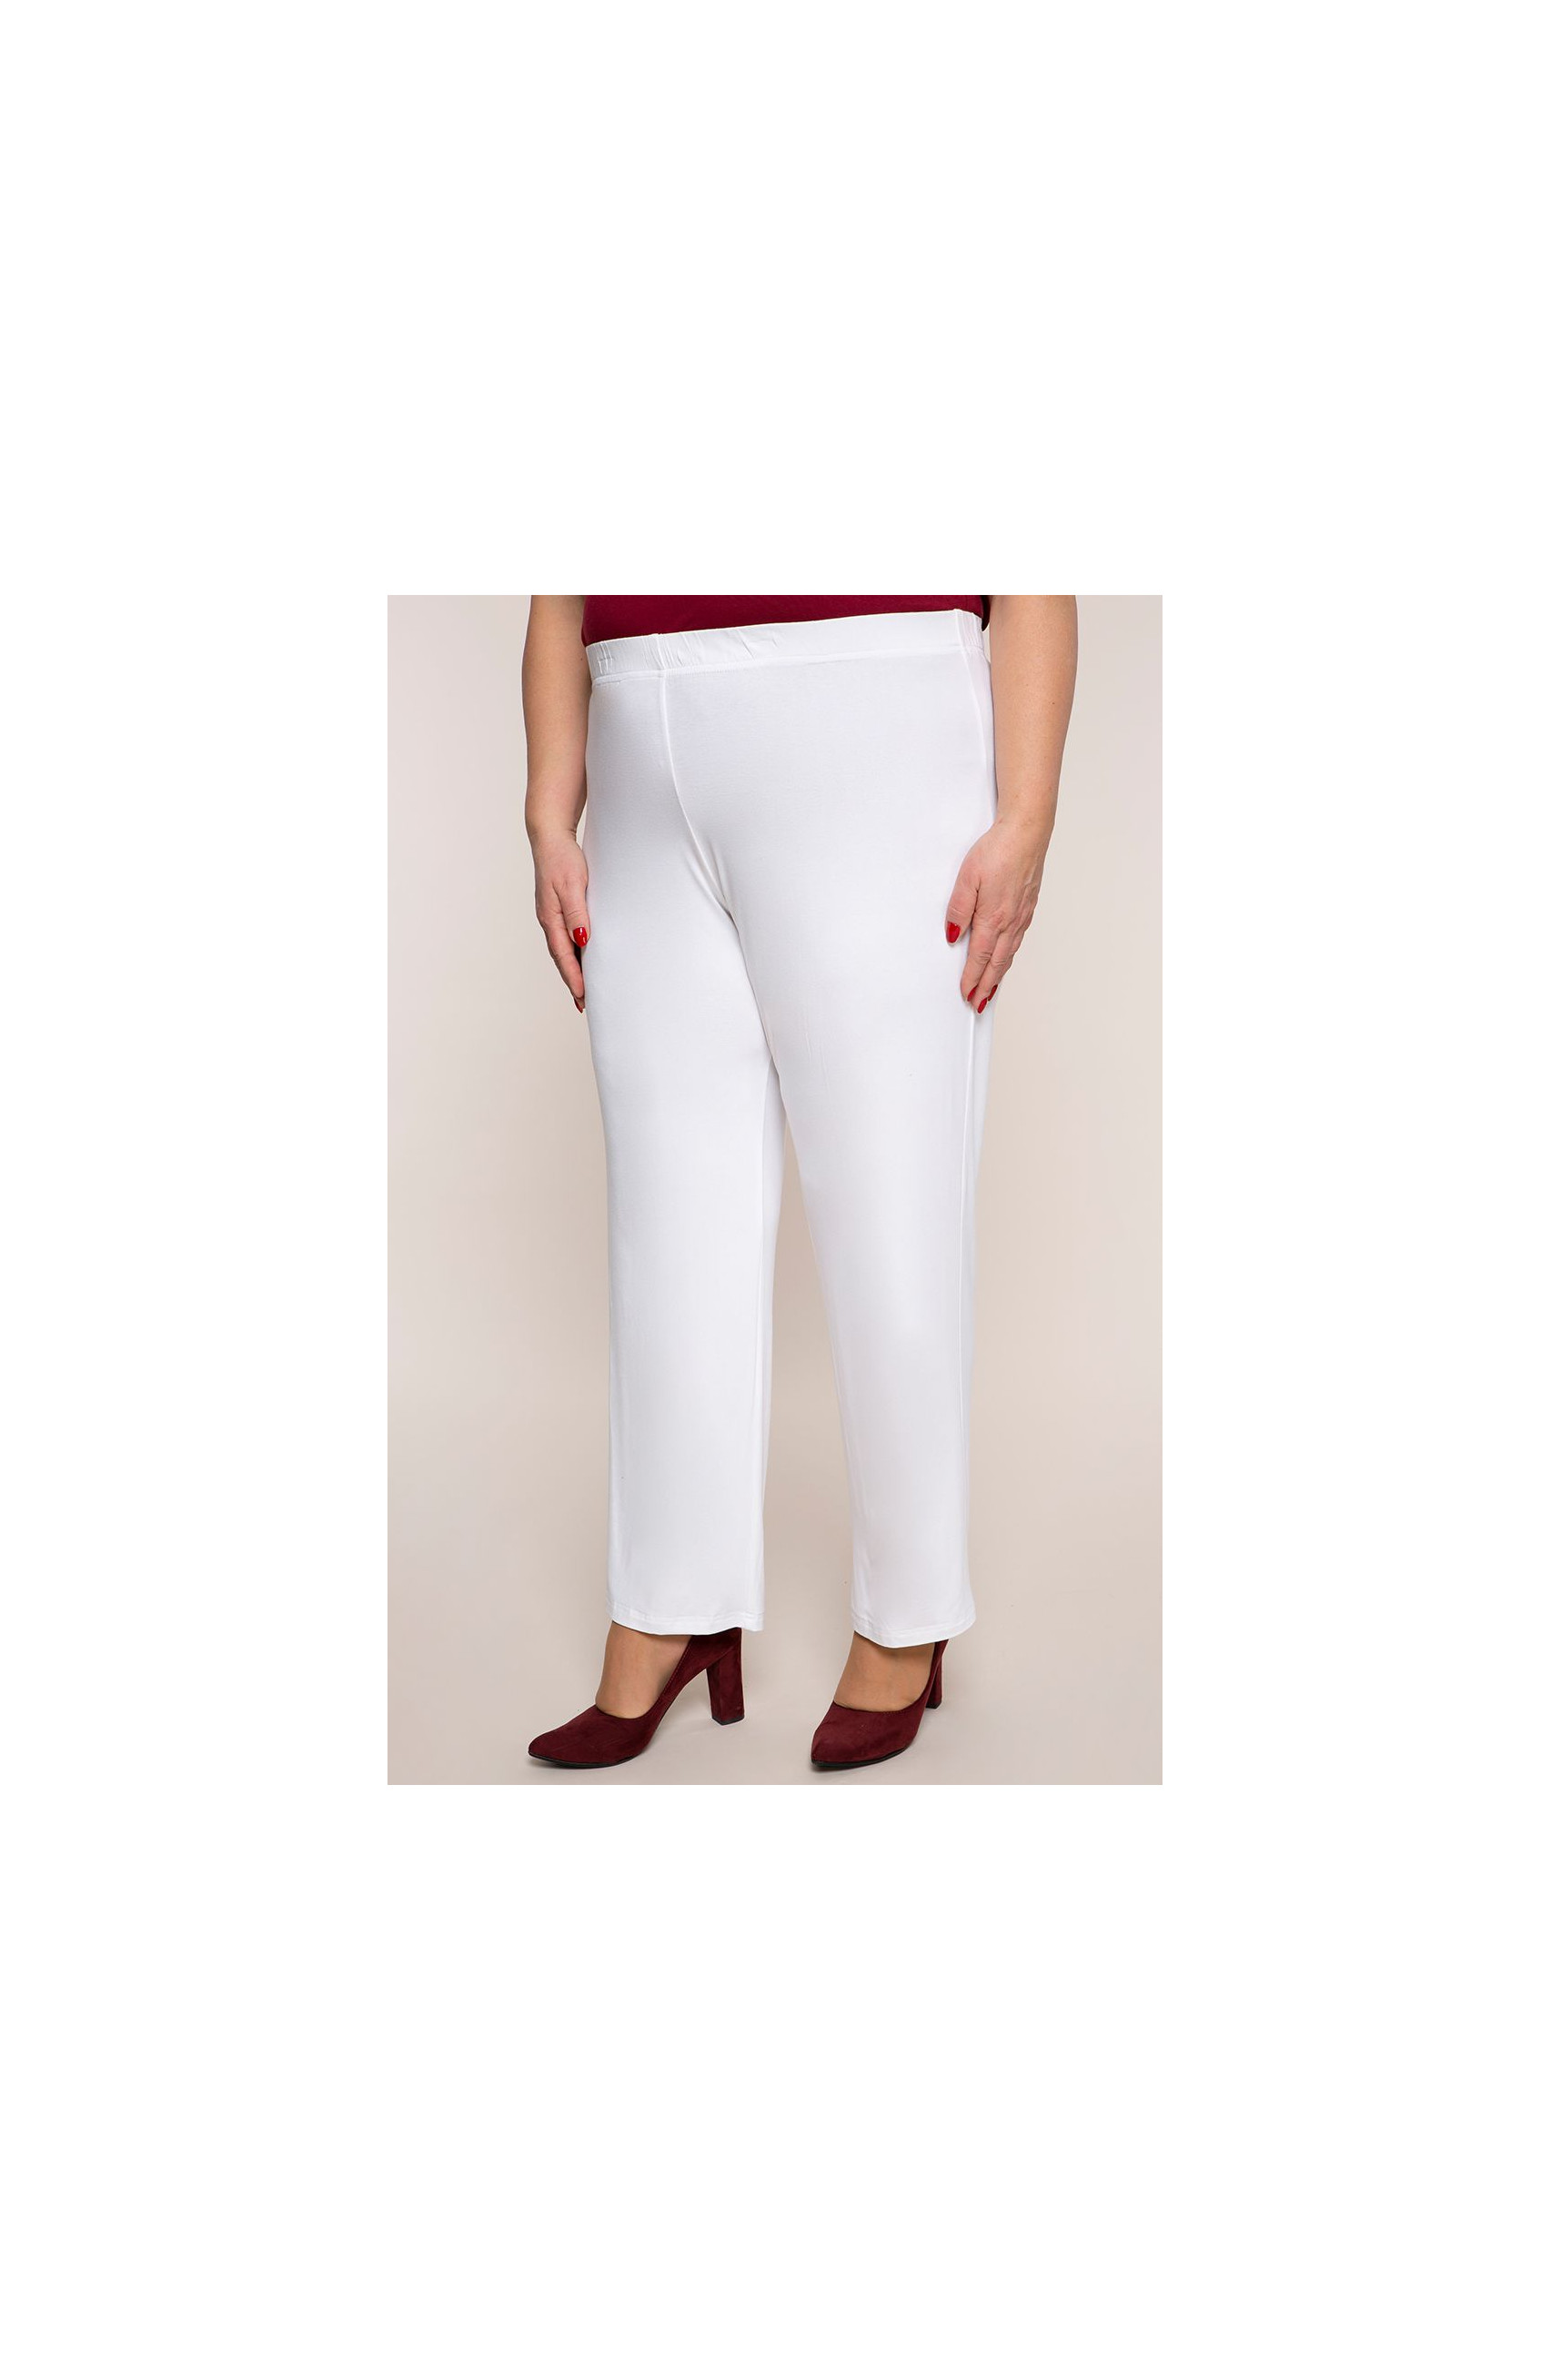 Klasické tenké biele nohavice